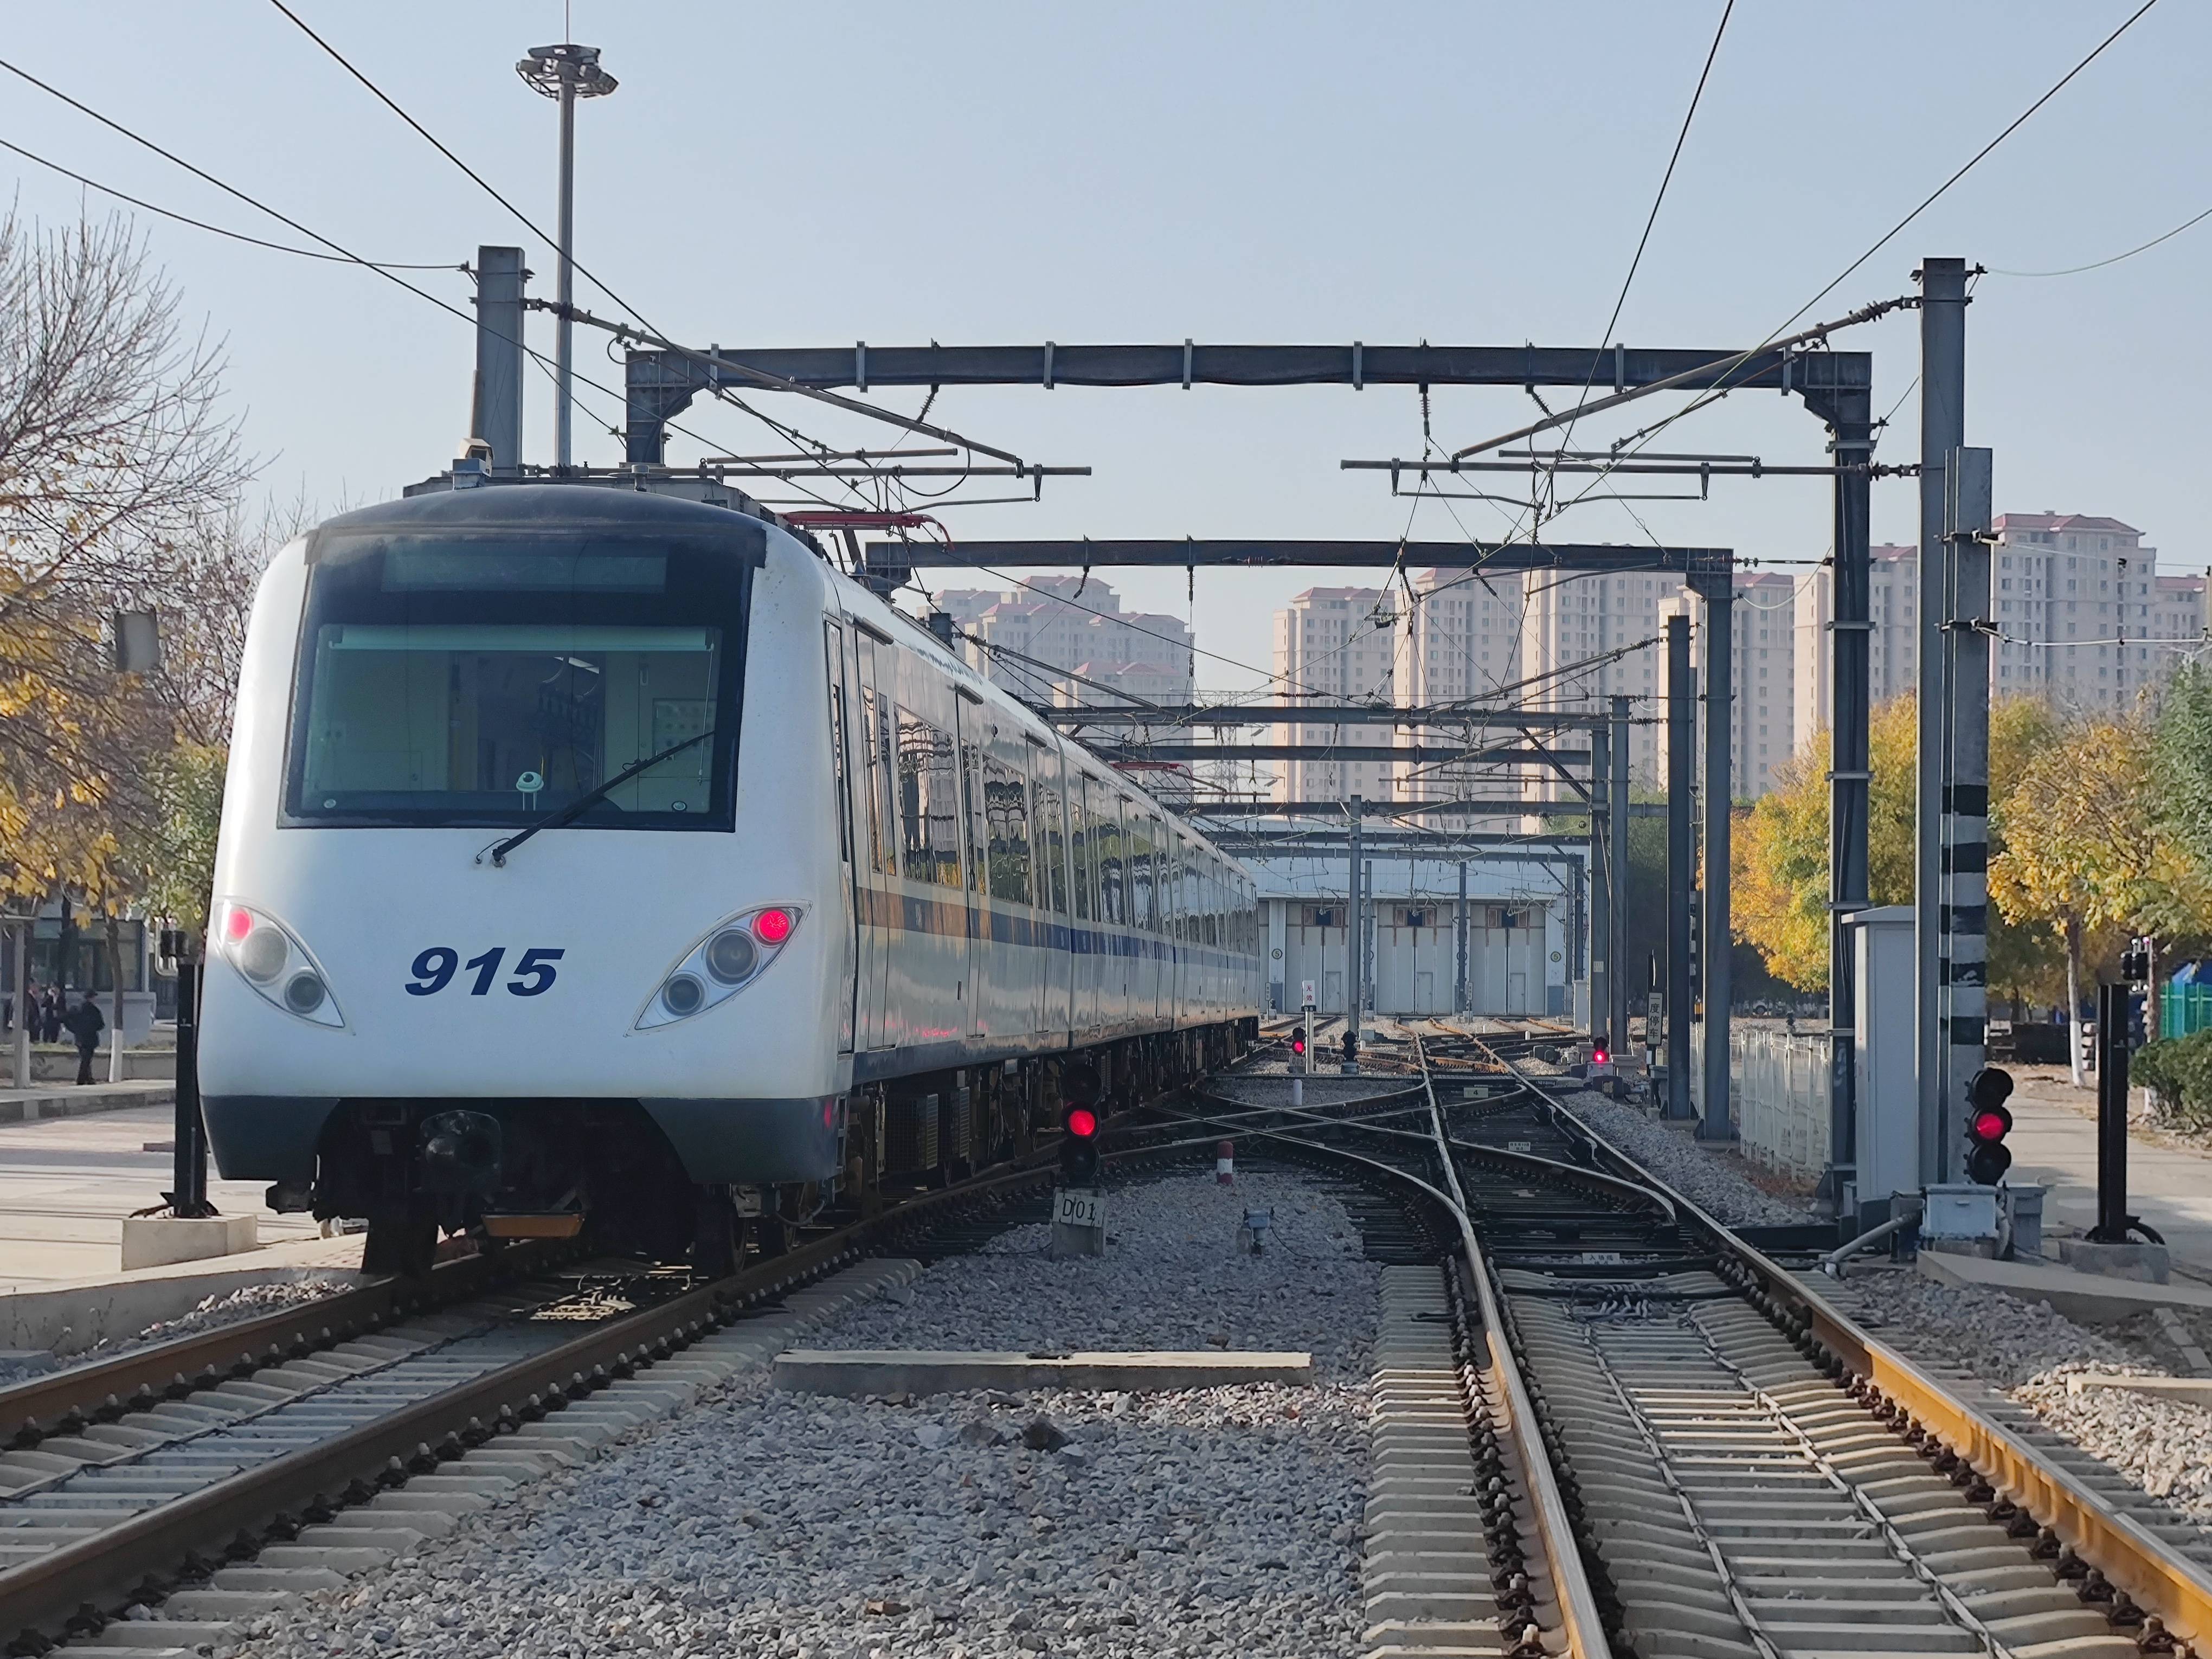 天津地铁津滨线图片